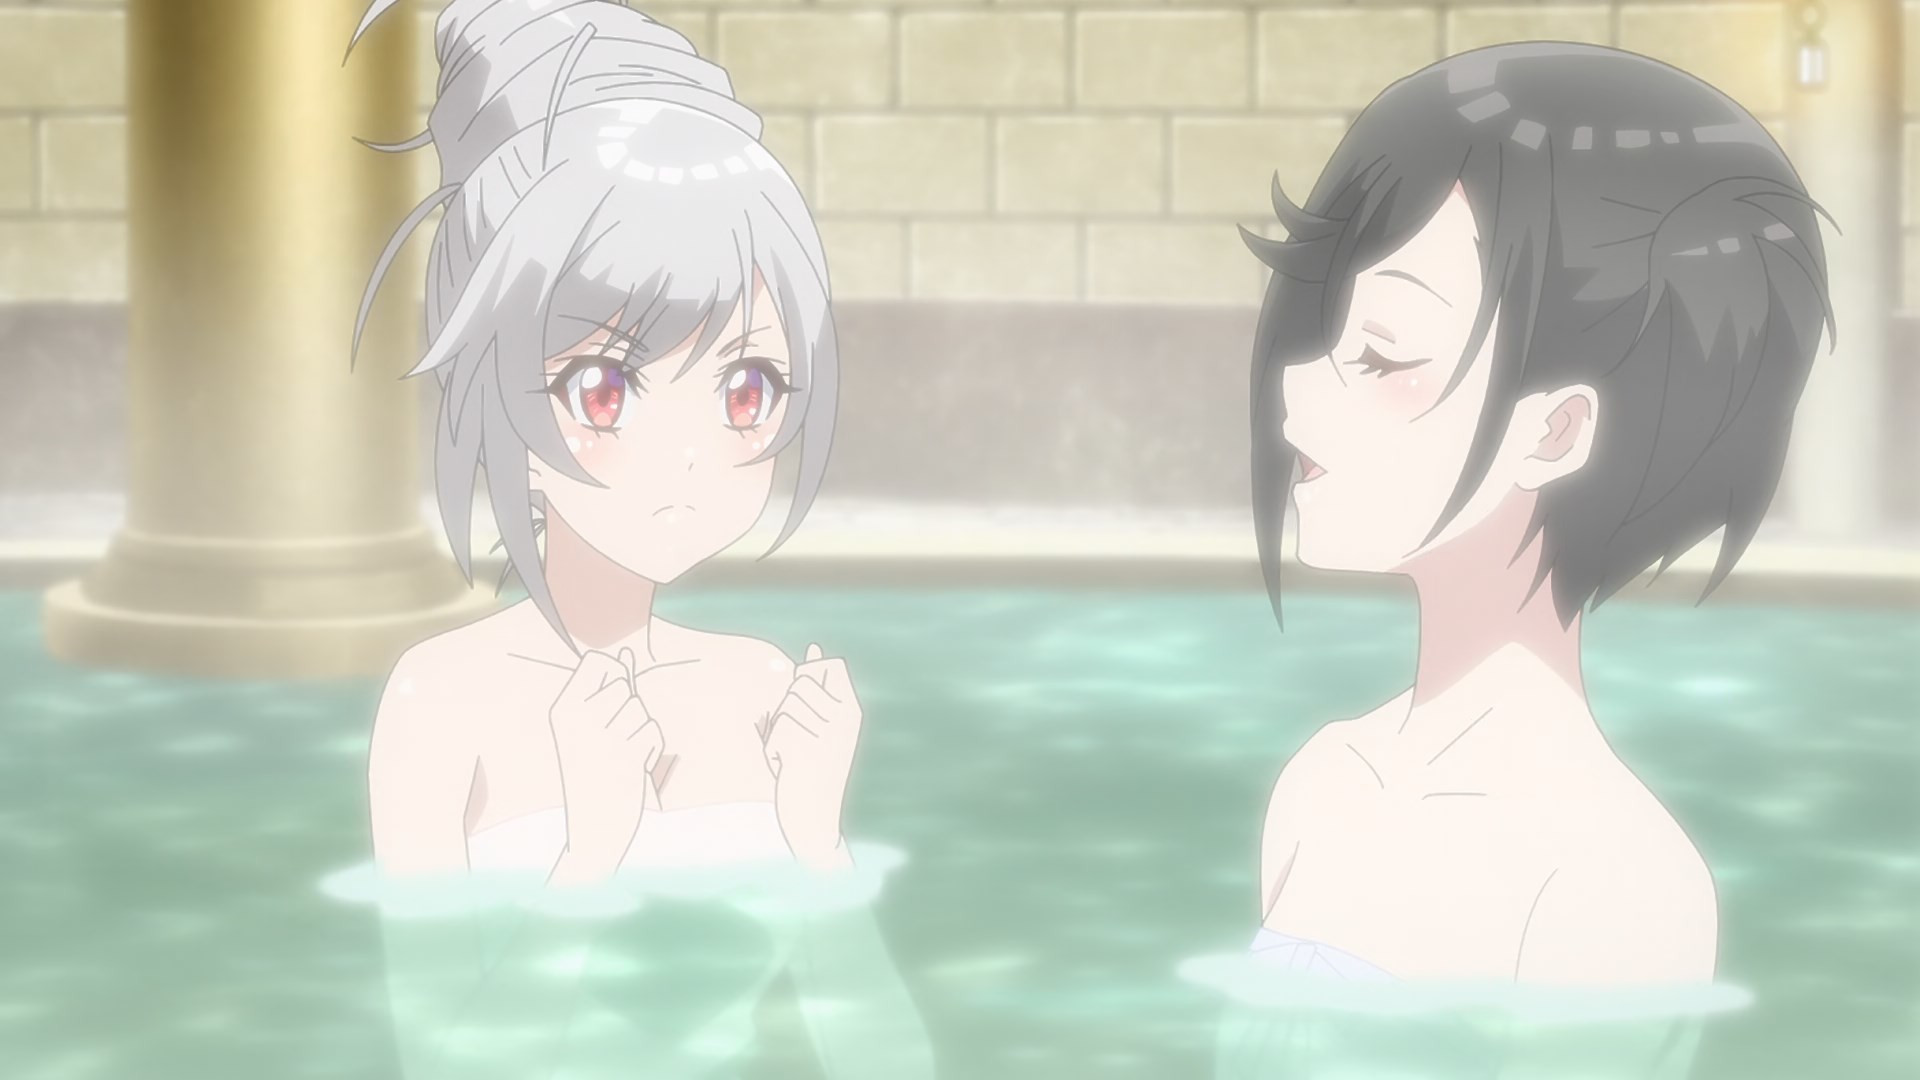 File:Eiyuu Kyoushitsu ch 1 1.png - Anime Bath Scene Wiki